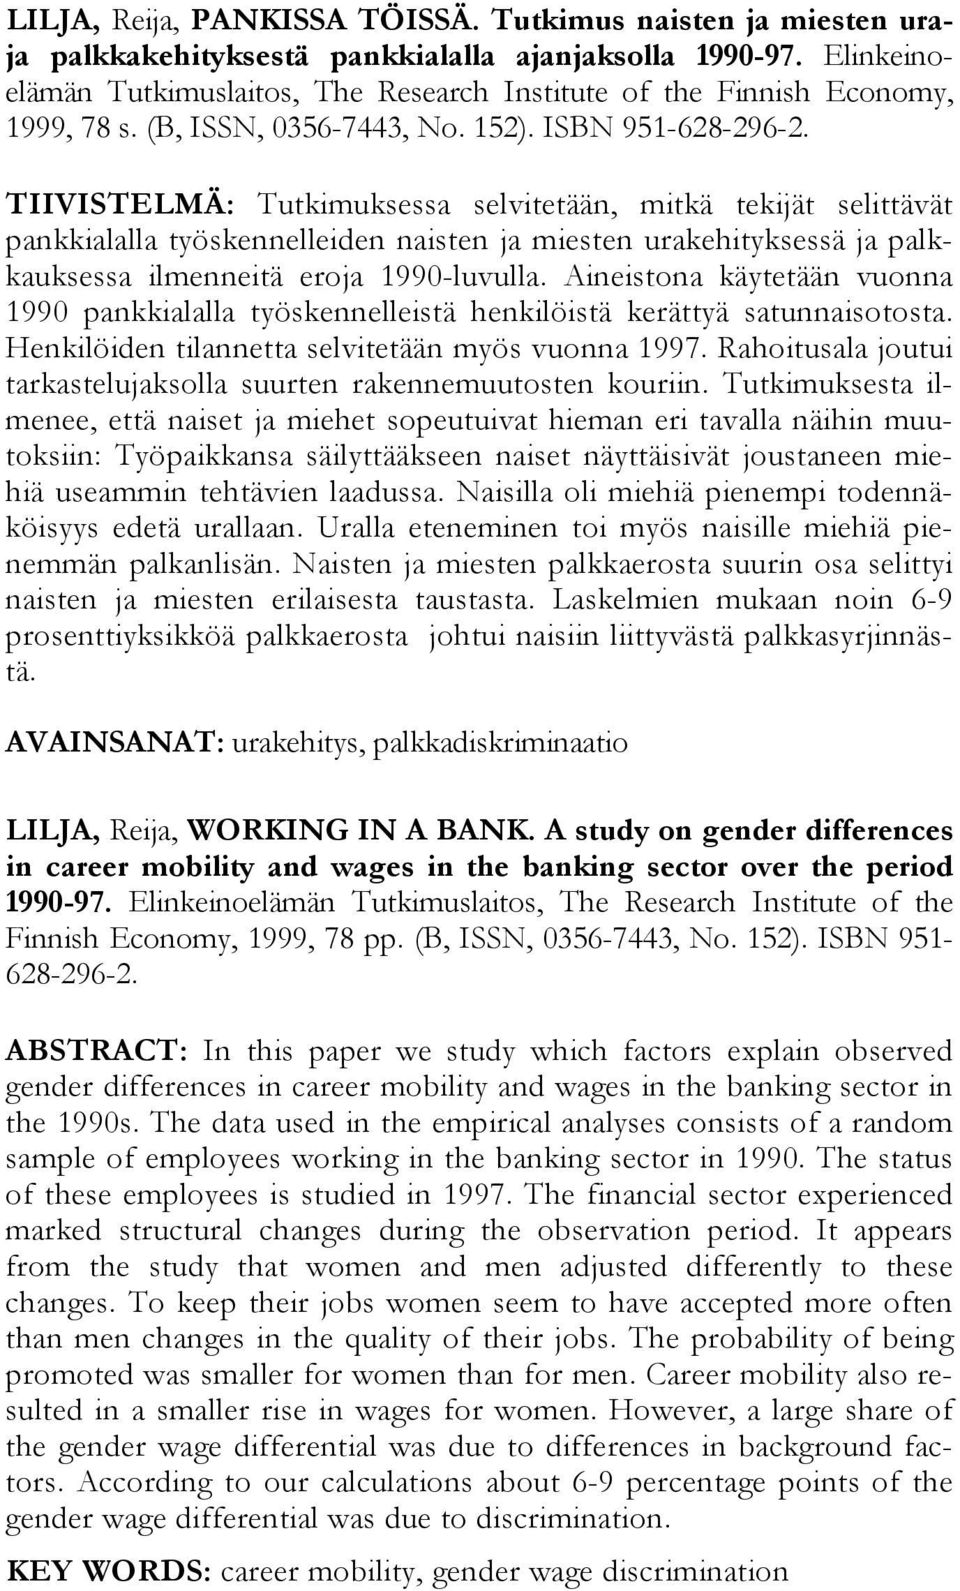 TIIVISTELMÄ: Tutkimuksessa selvitetään, mitkä tekijät selittävät pankkialalla työskennelleiden naisten ja miesten urakehityksessä ja palkkauksessa ilmenneitä eroja 1990-luvulla.